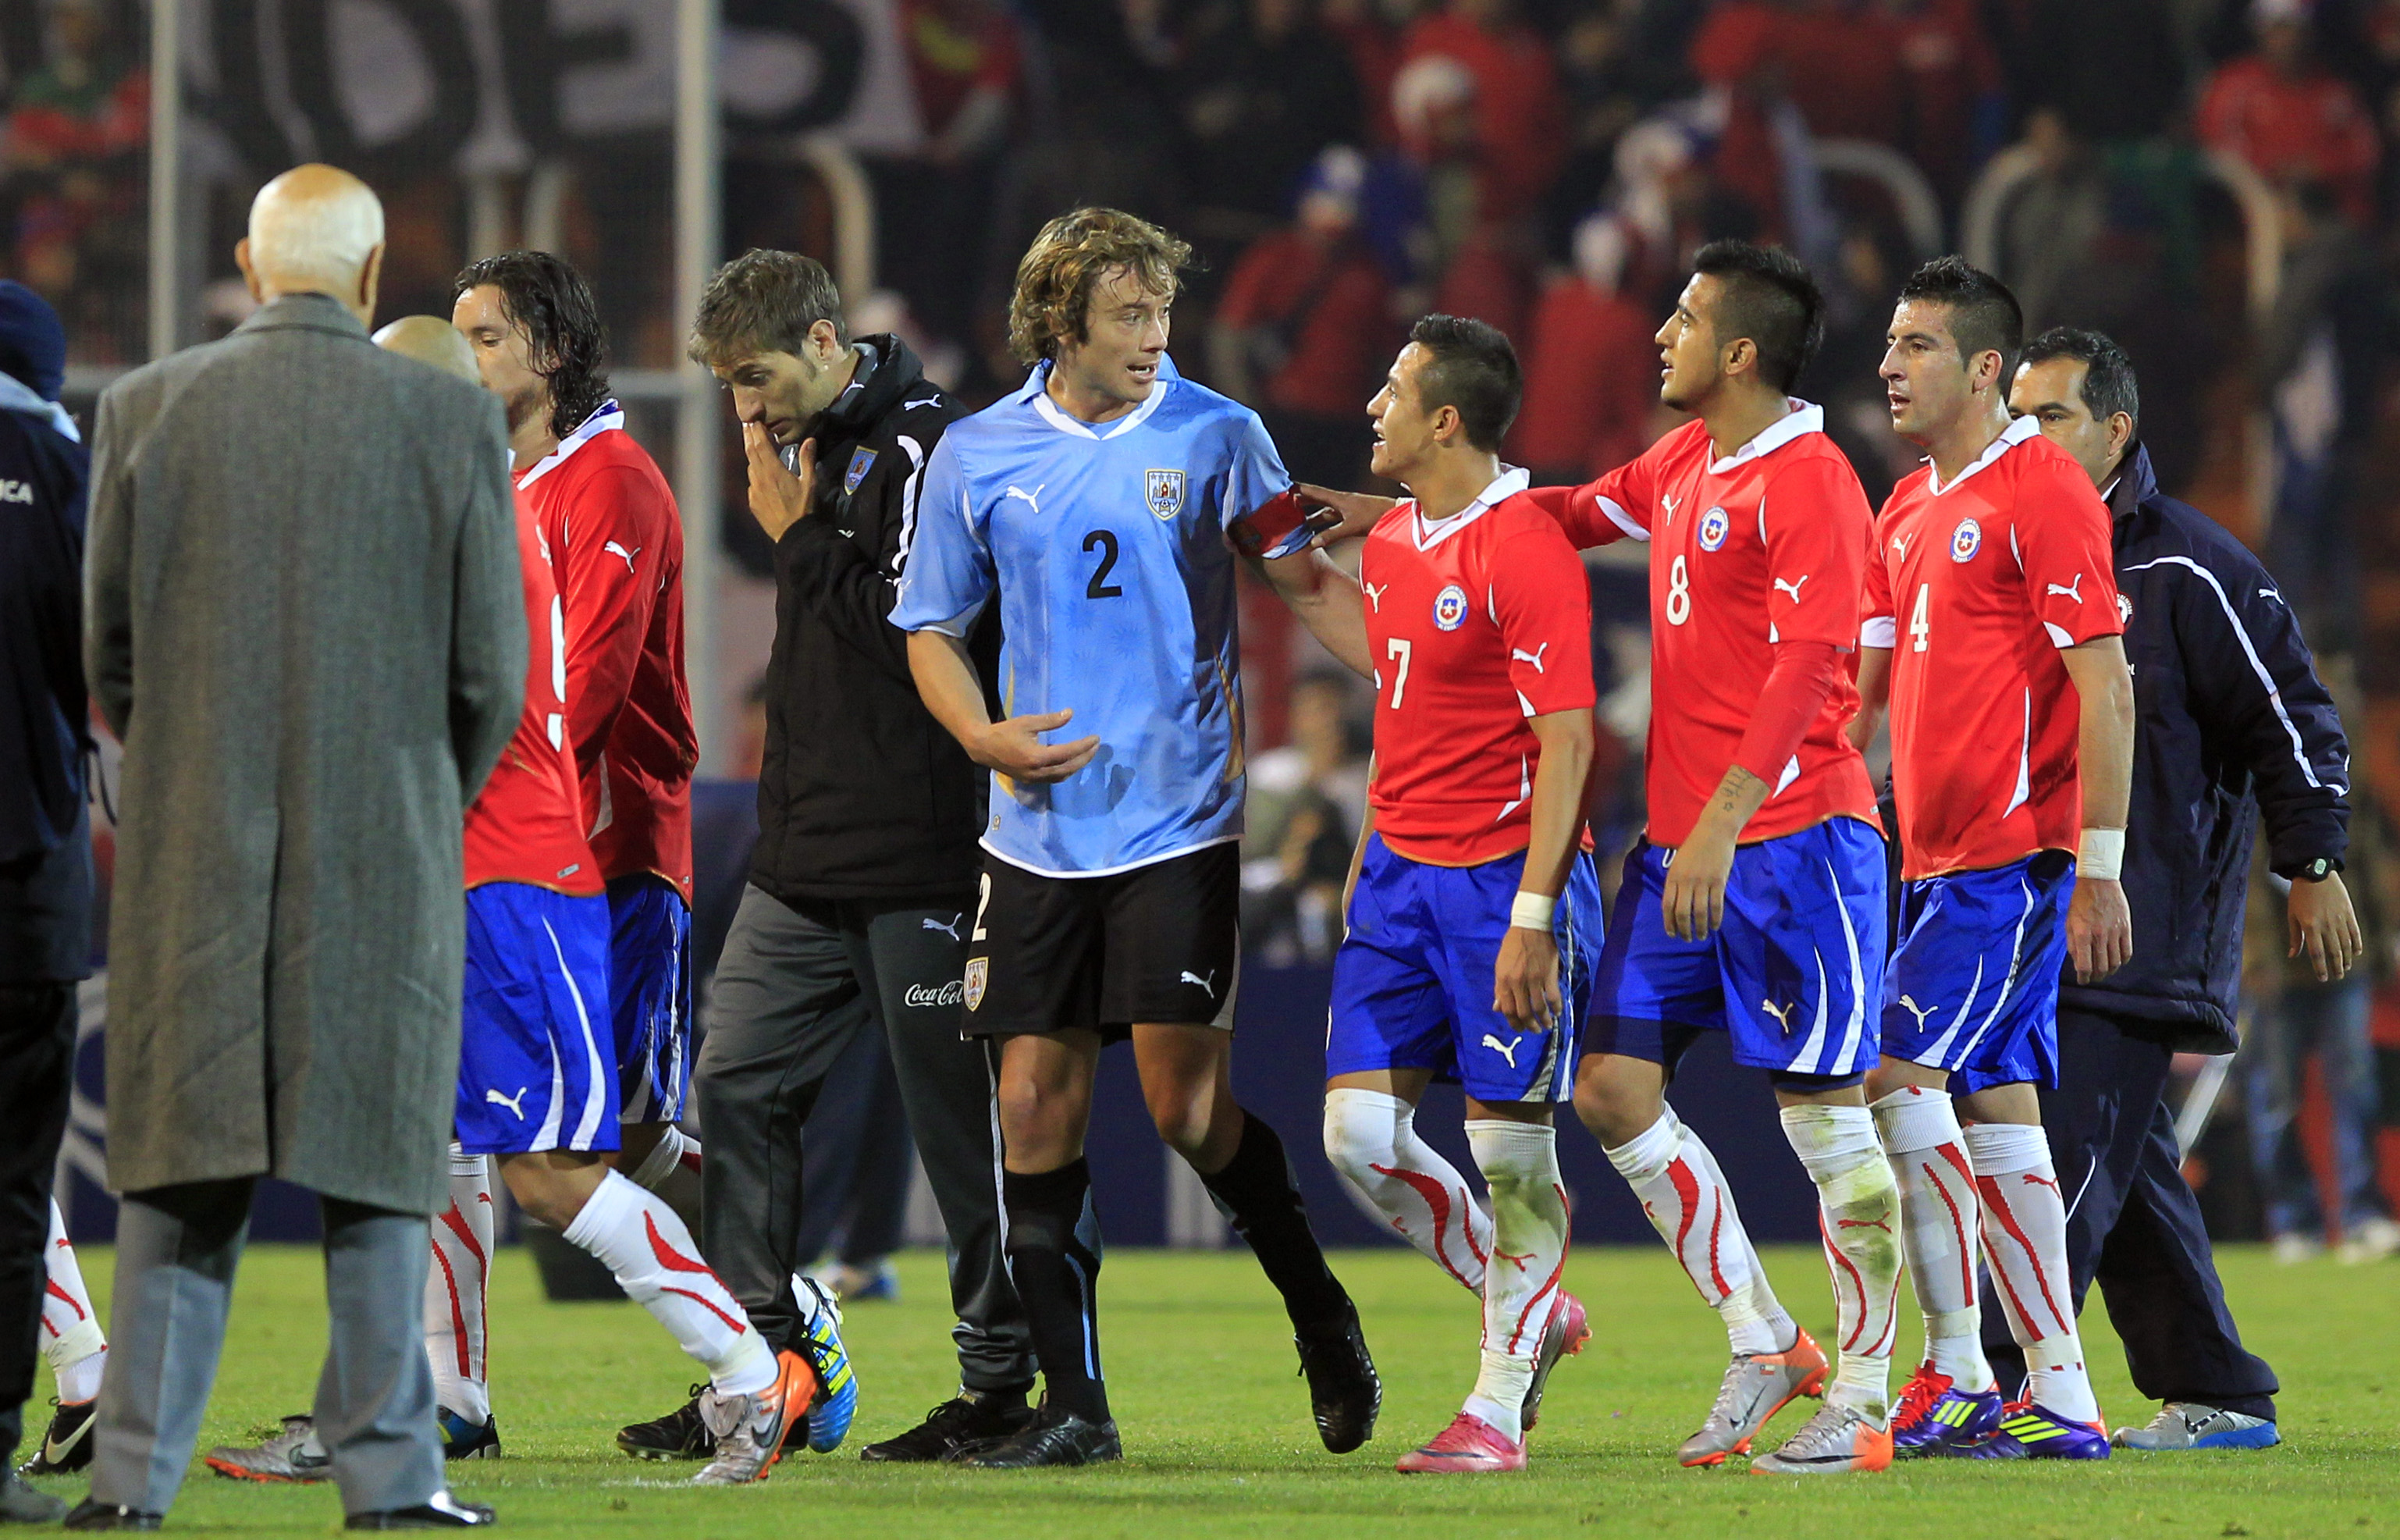 Chile Vs Uruguay